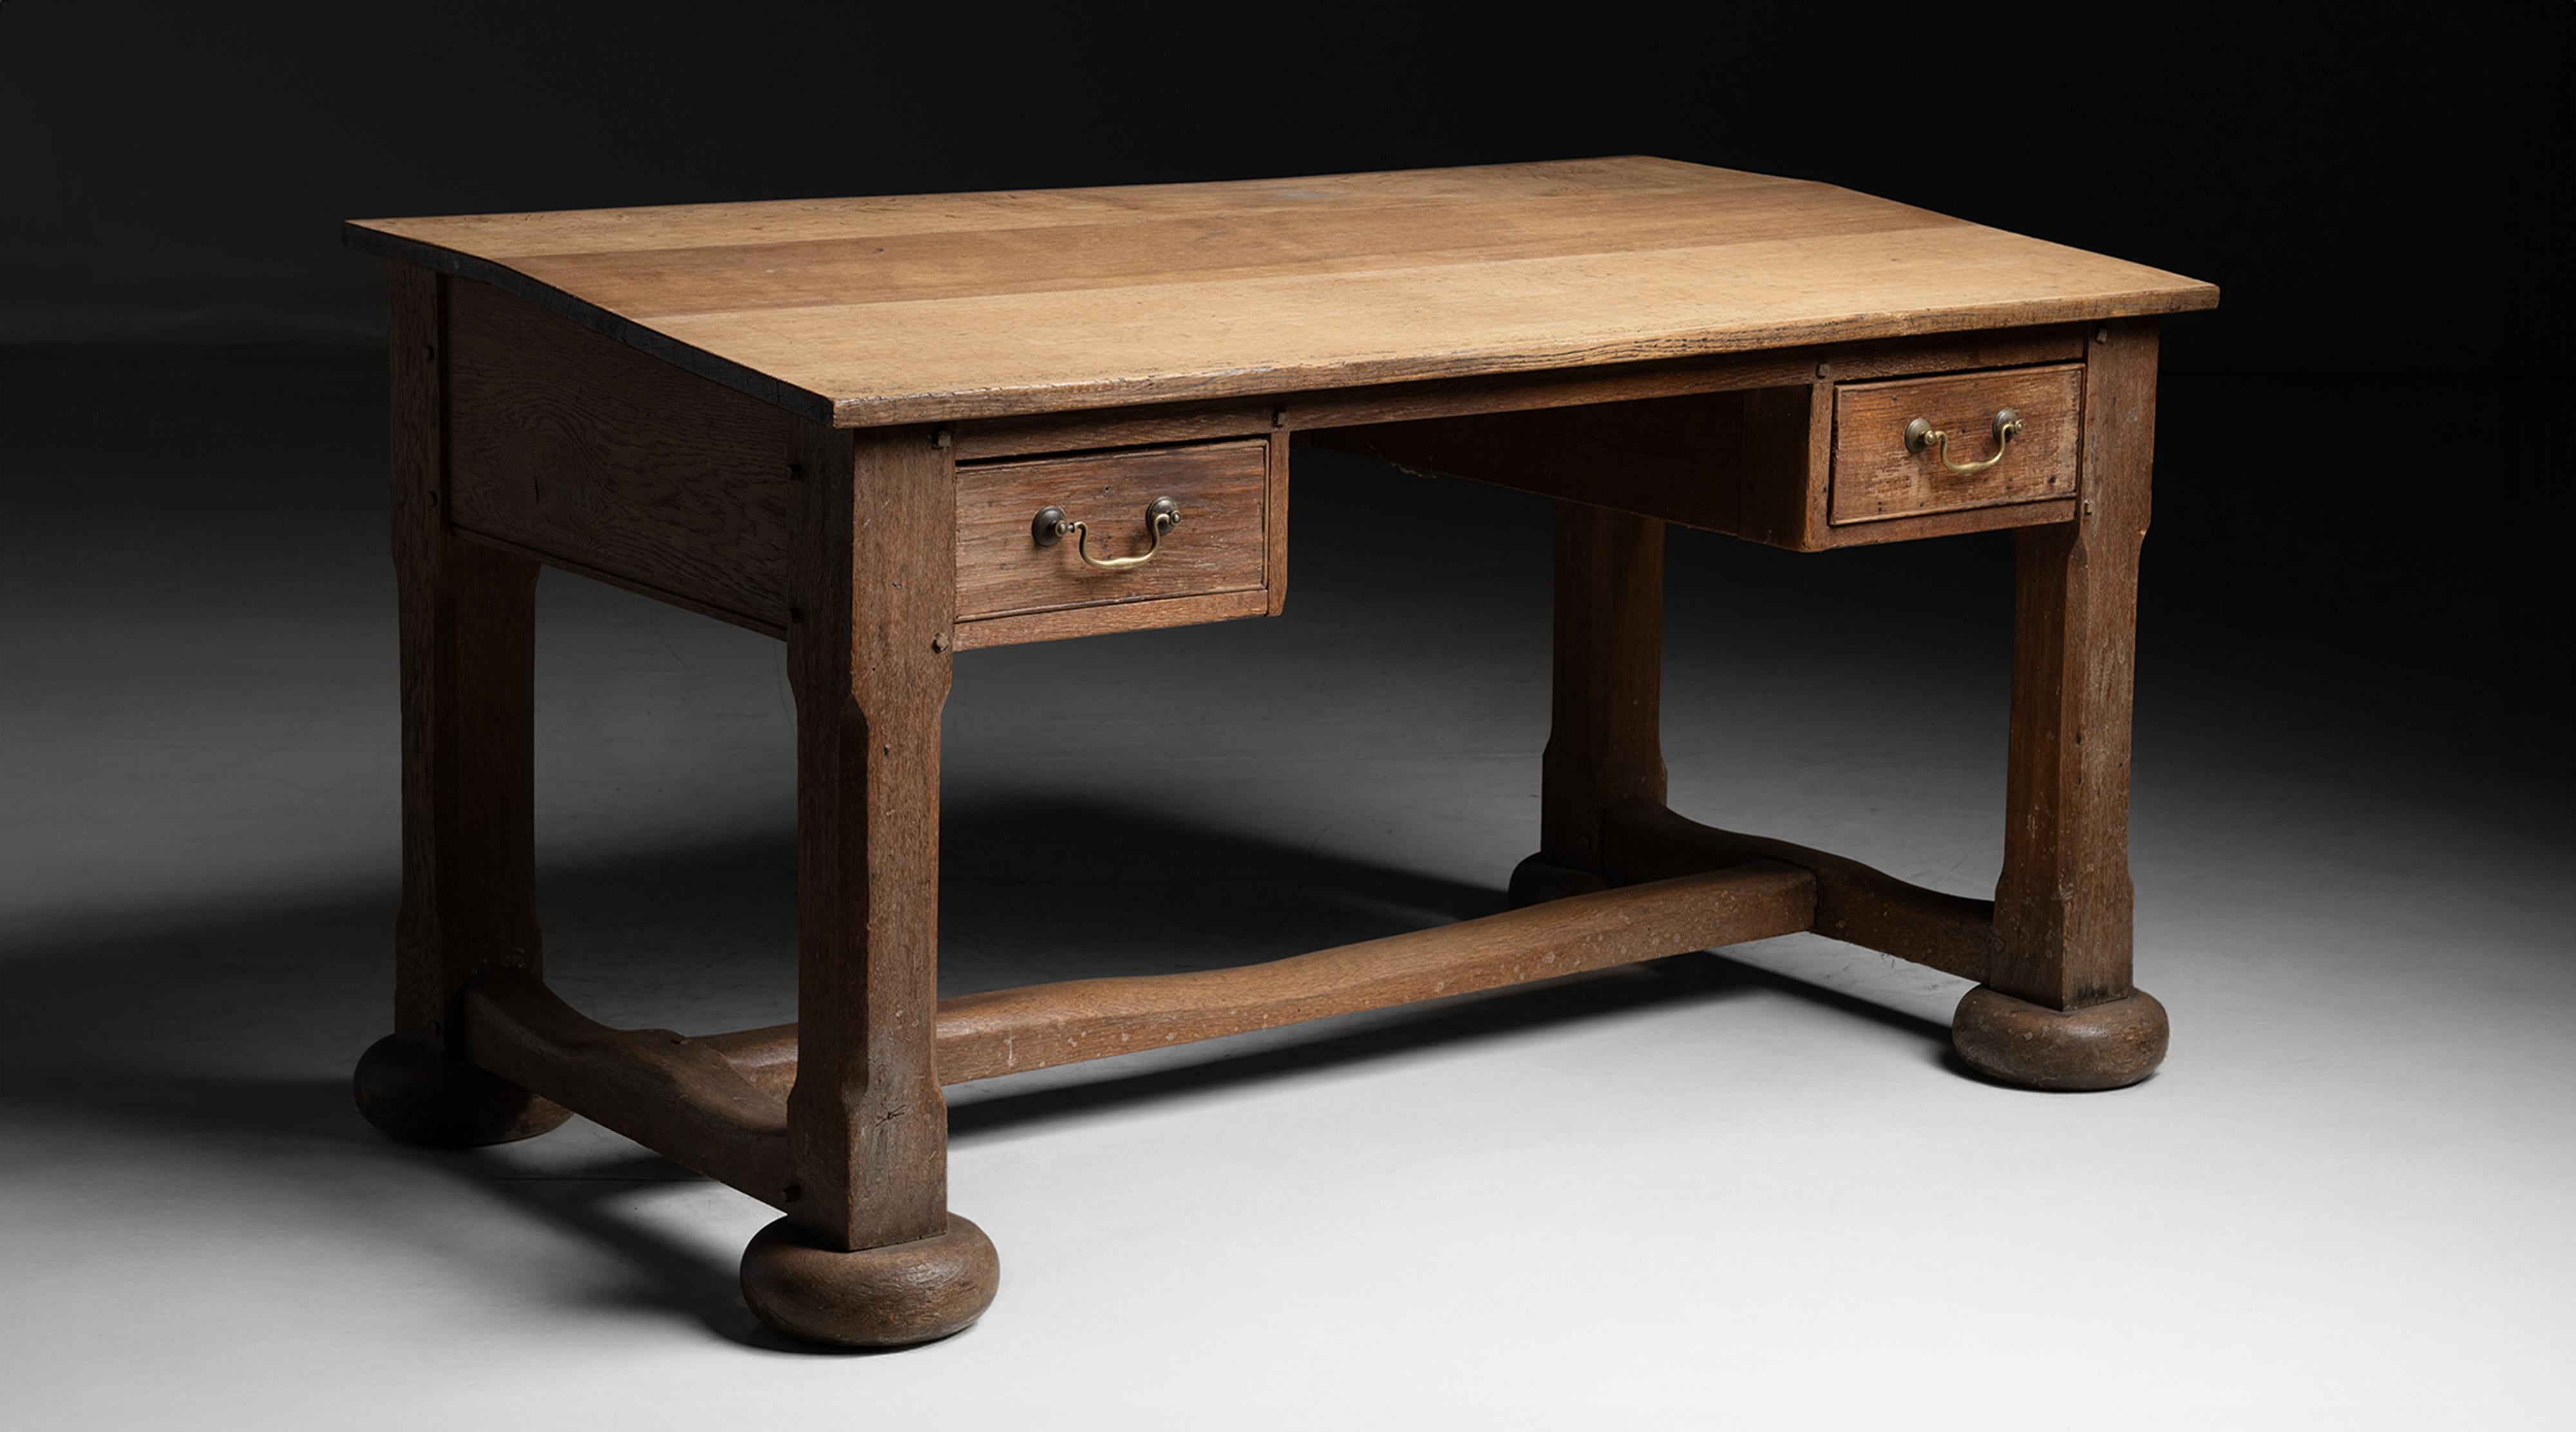 Eichenholz-Schreibtisch
England um 1820
Nachlassgefertigter Schreibtisch mit zwei Schubladen, Bahre und abgewinkelter Oberfläche.
58,75 